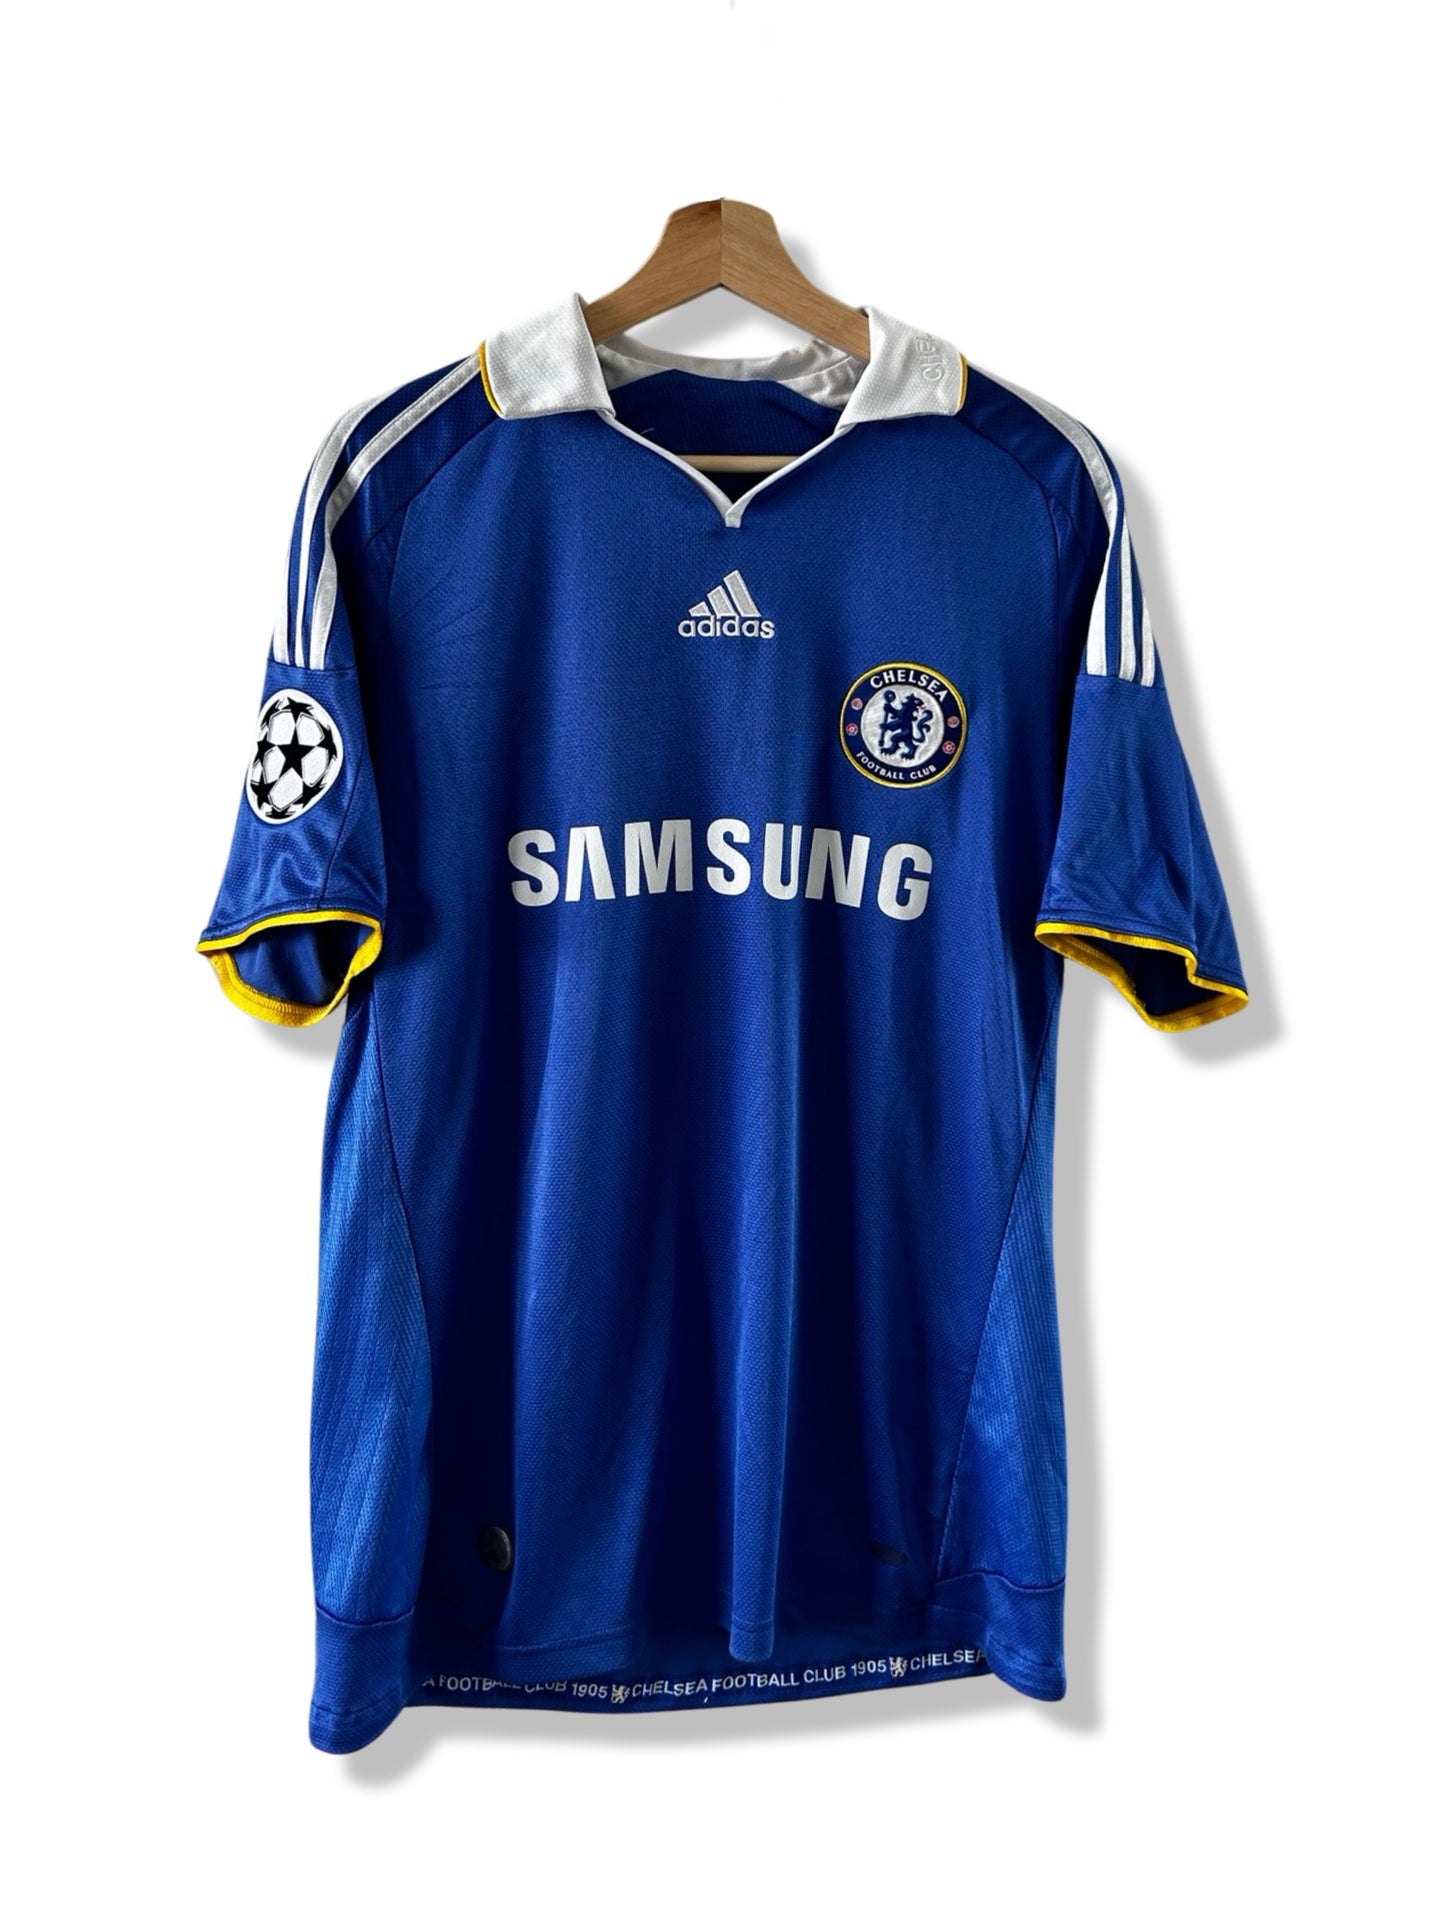 Chelsea FC 2008-09 Home Shirt, #11 Didier Drogba (Champions League) - L